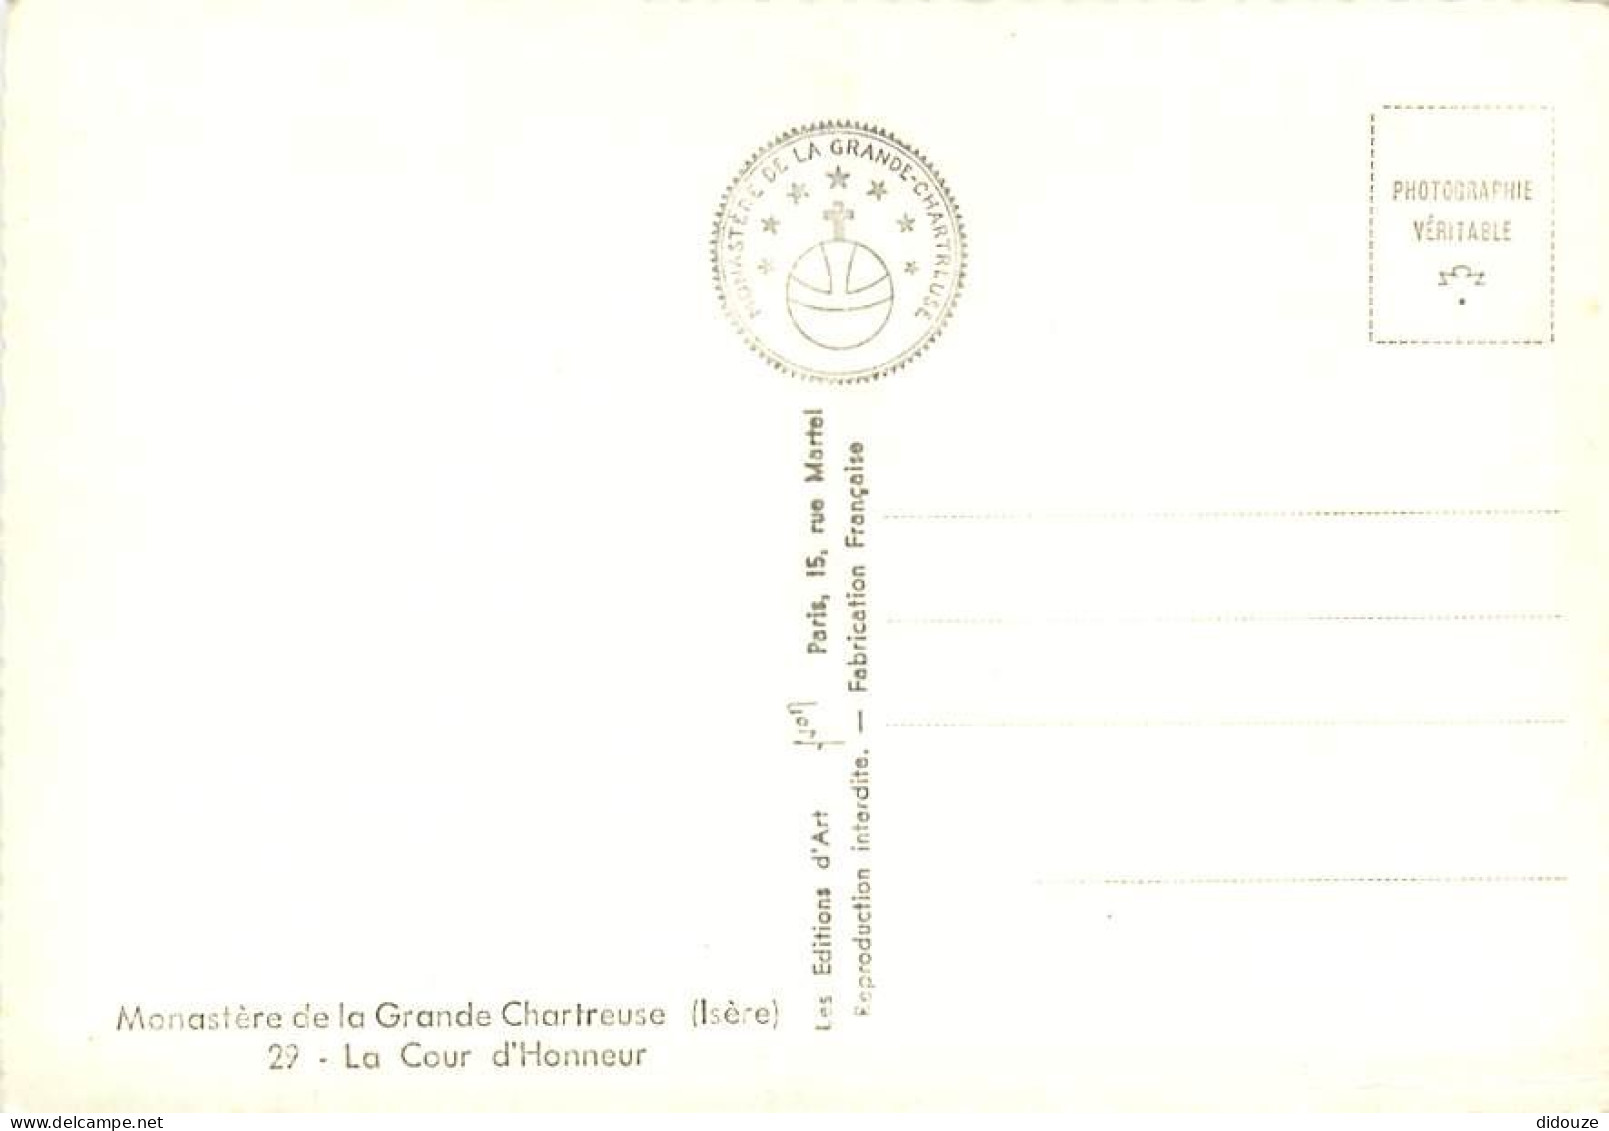 38 - La Grande Chartreuse - Monastère De La Grande Chartreuse - La Cour D'Honneur - Mention Photographie Véritable - Car - Chartreuse